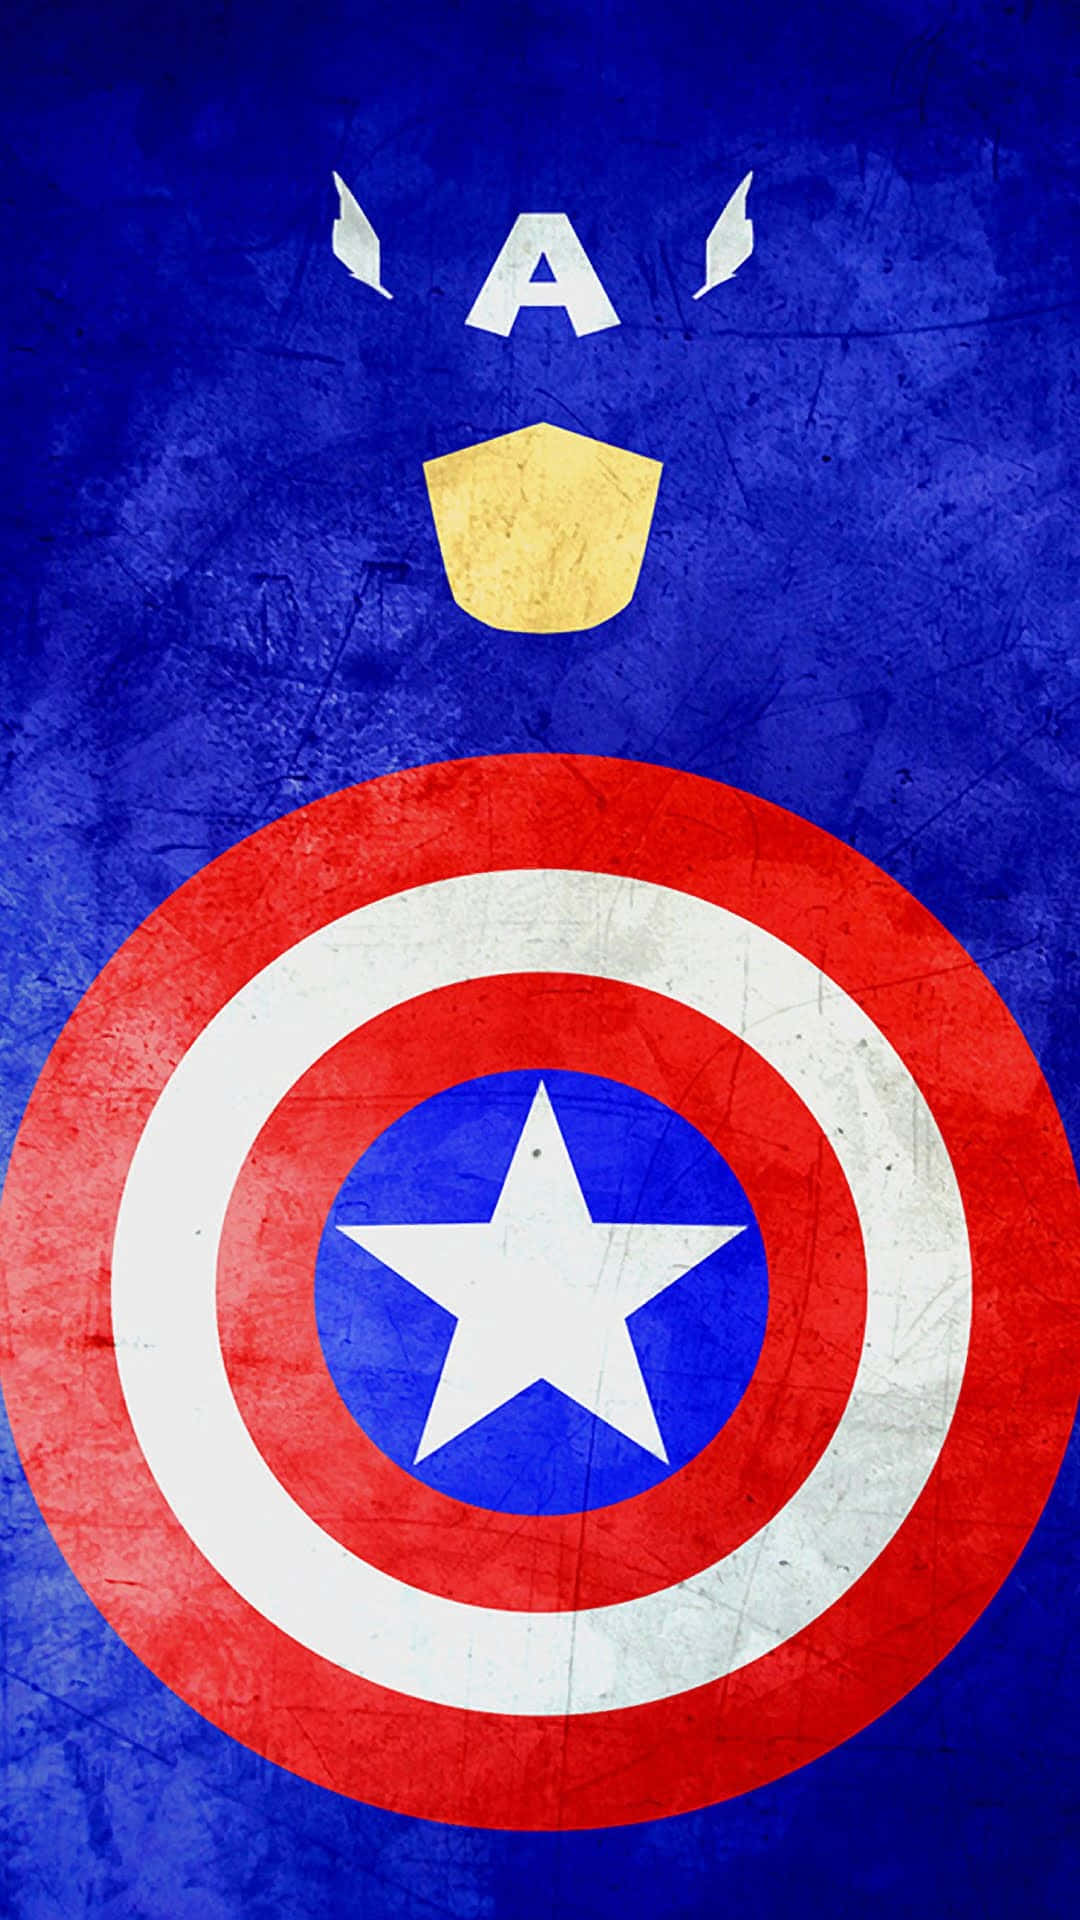 Preparatialla Battaglia - Android Captain America